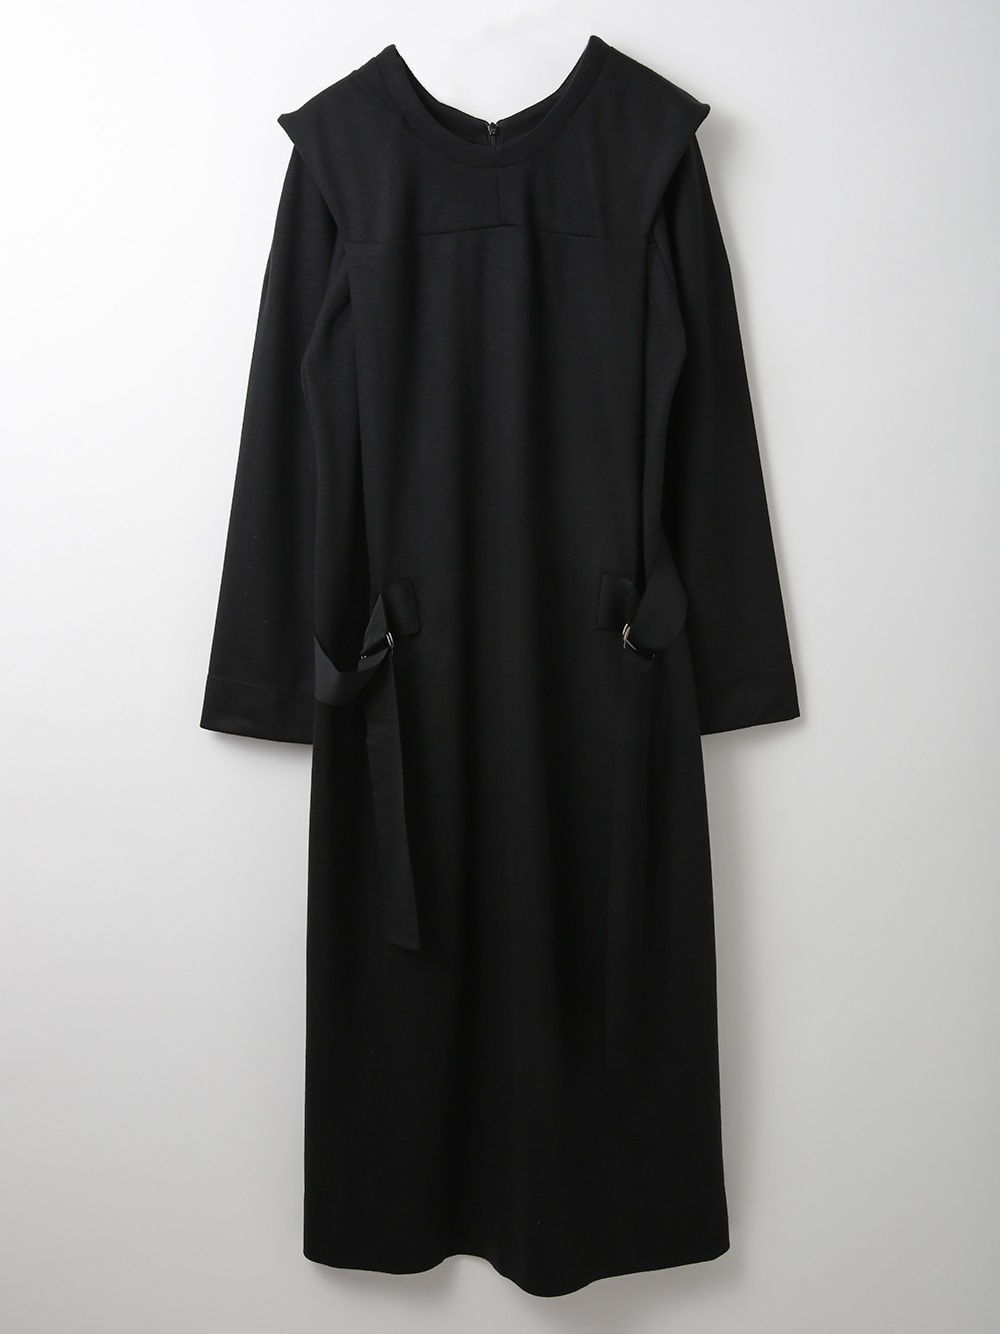 Long Sleeve Ponte Dress(00ブラック-フリー)